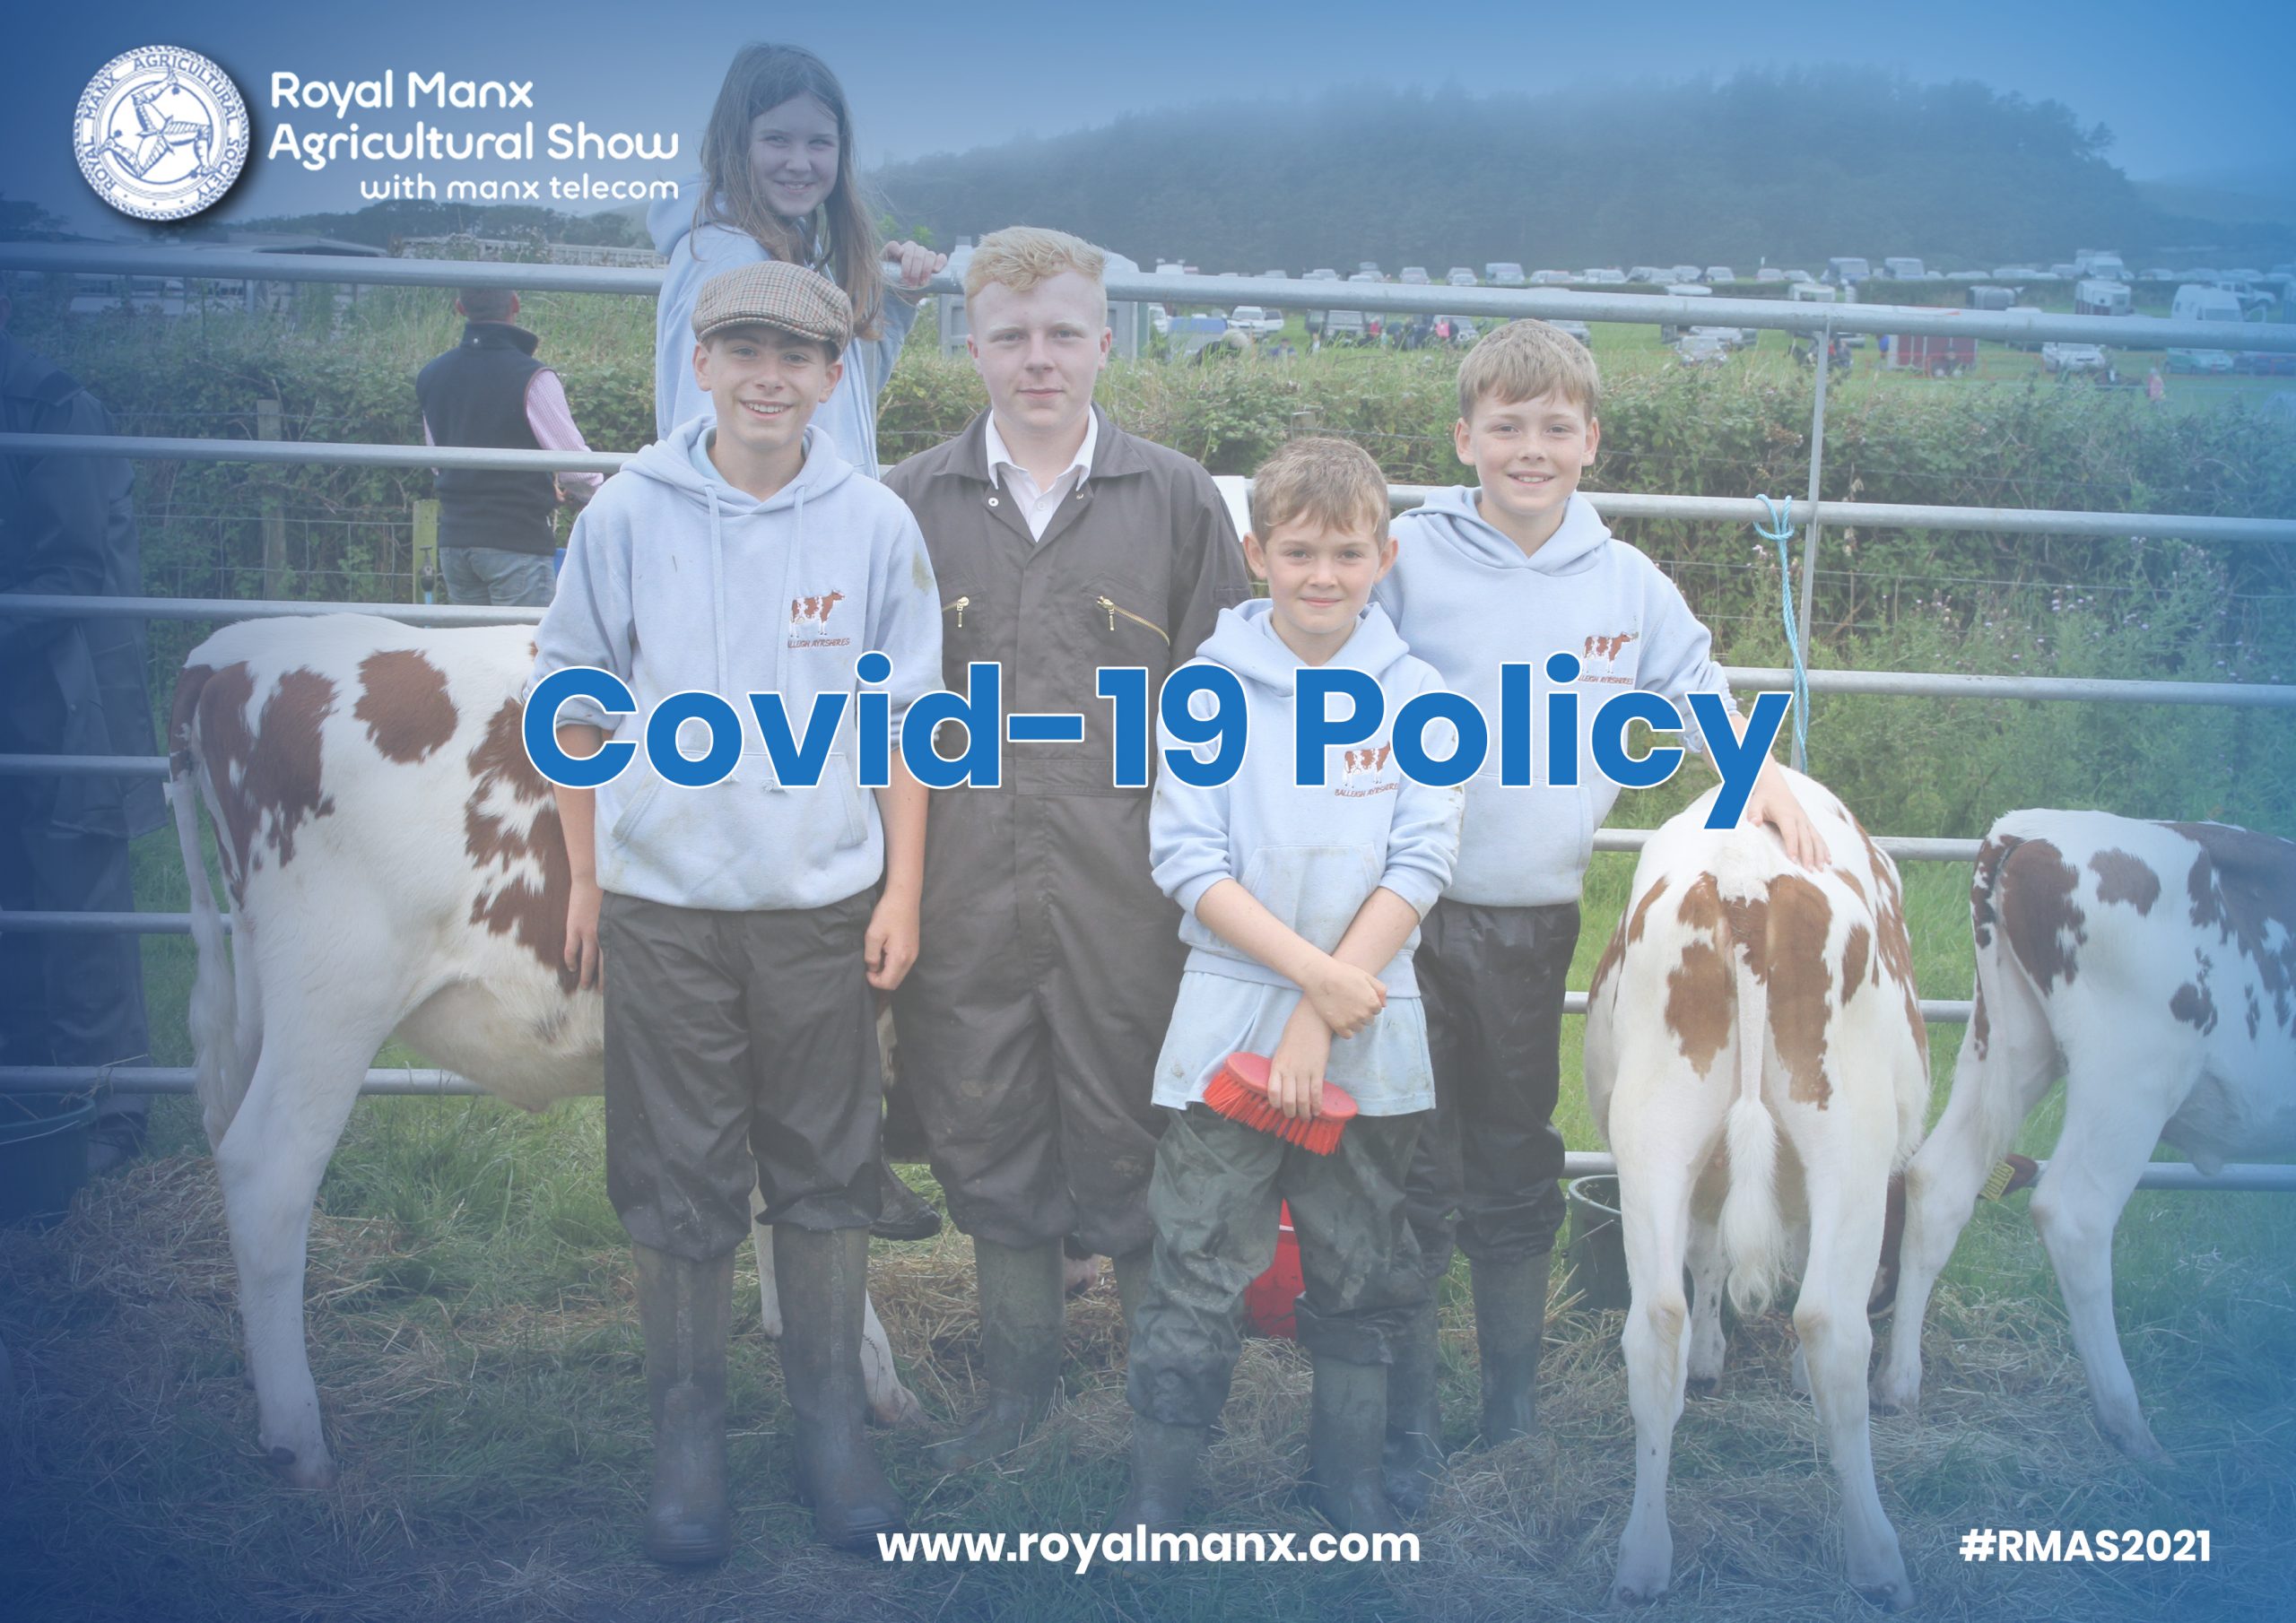 Covid-19 Policy